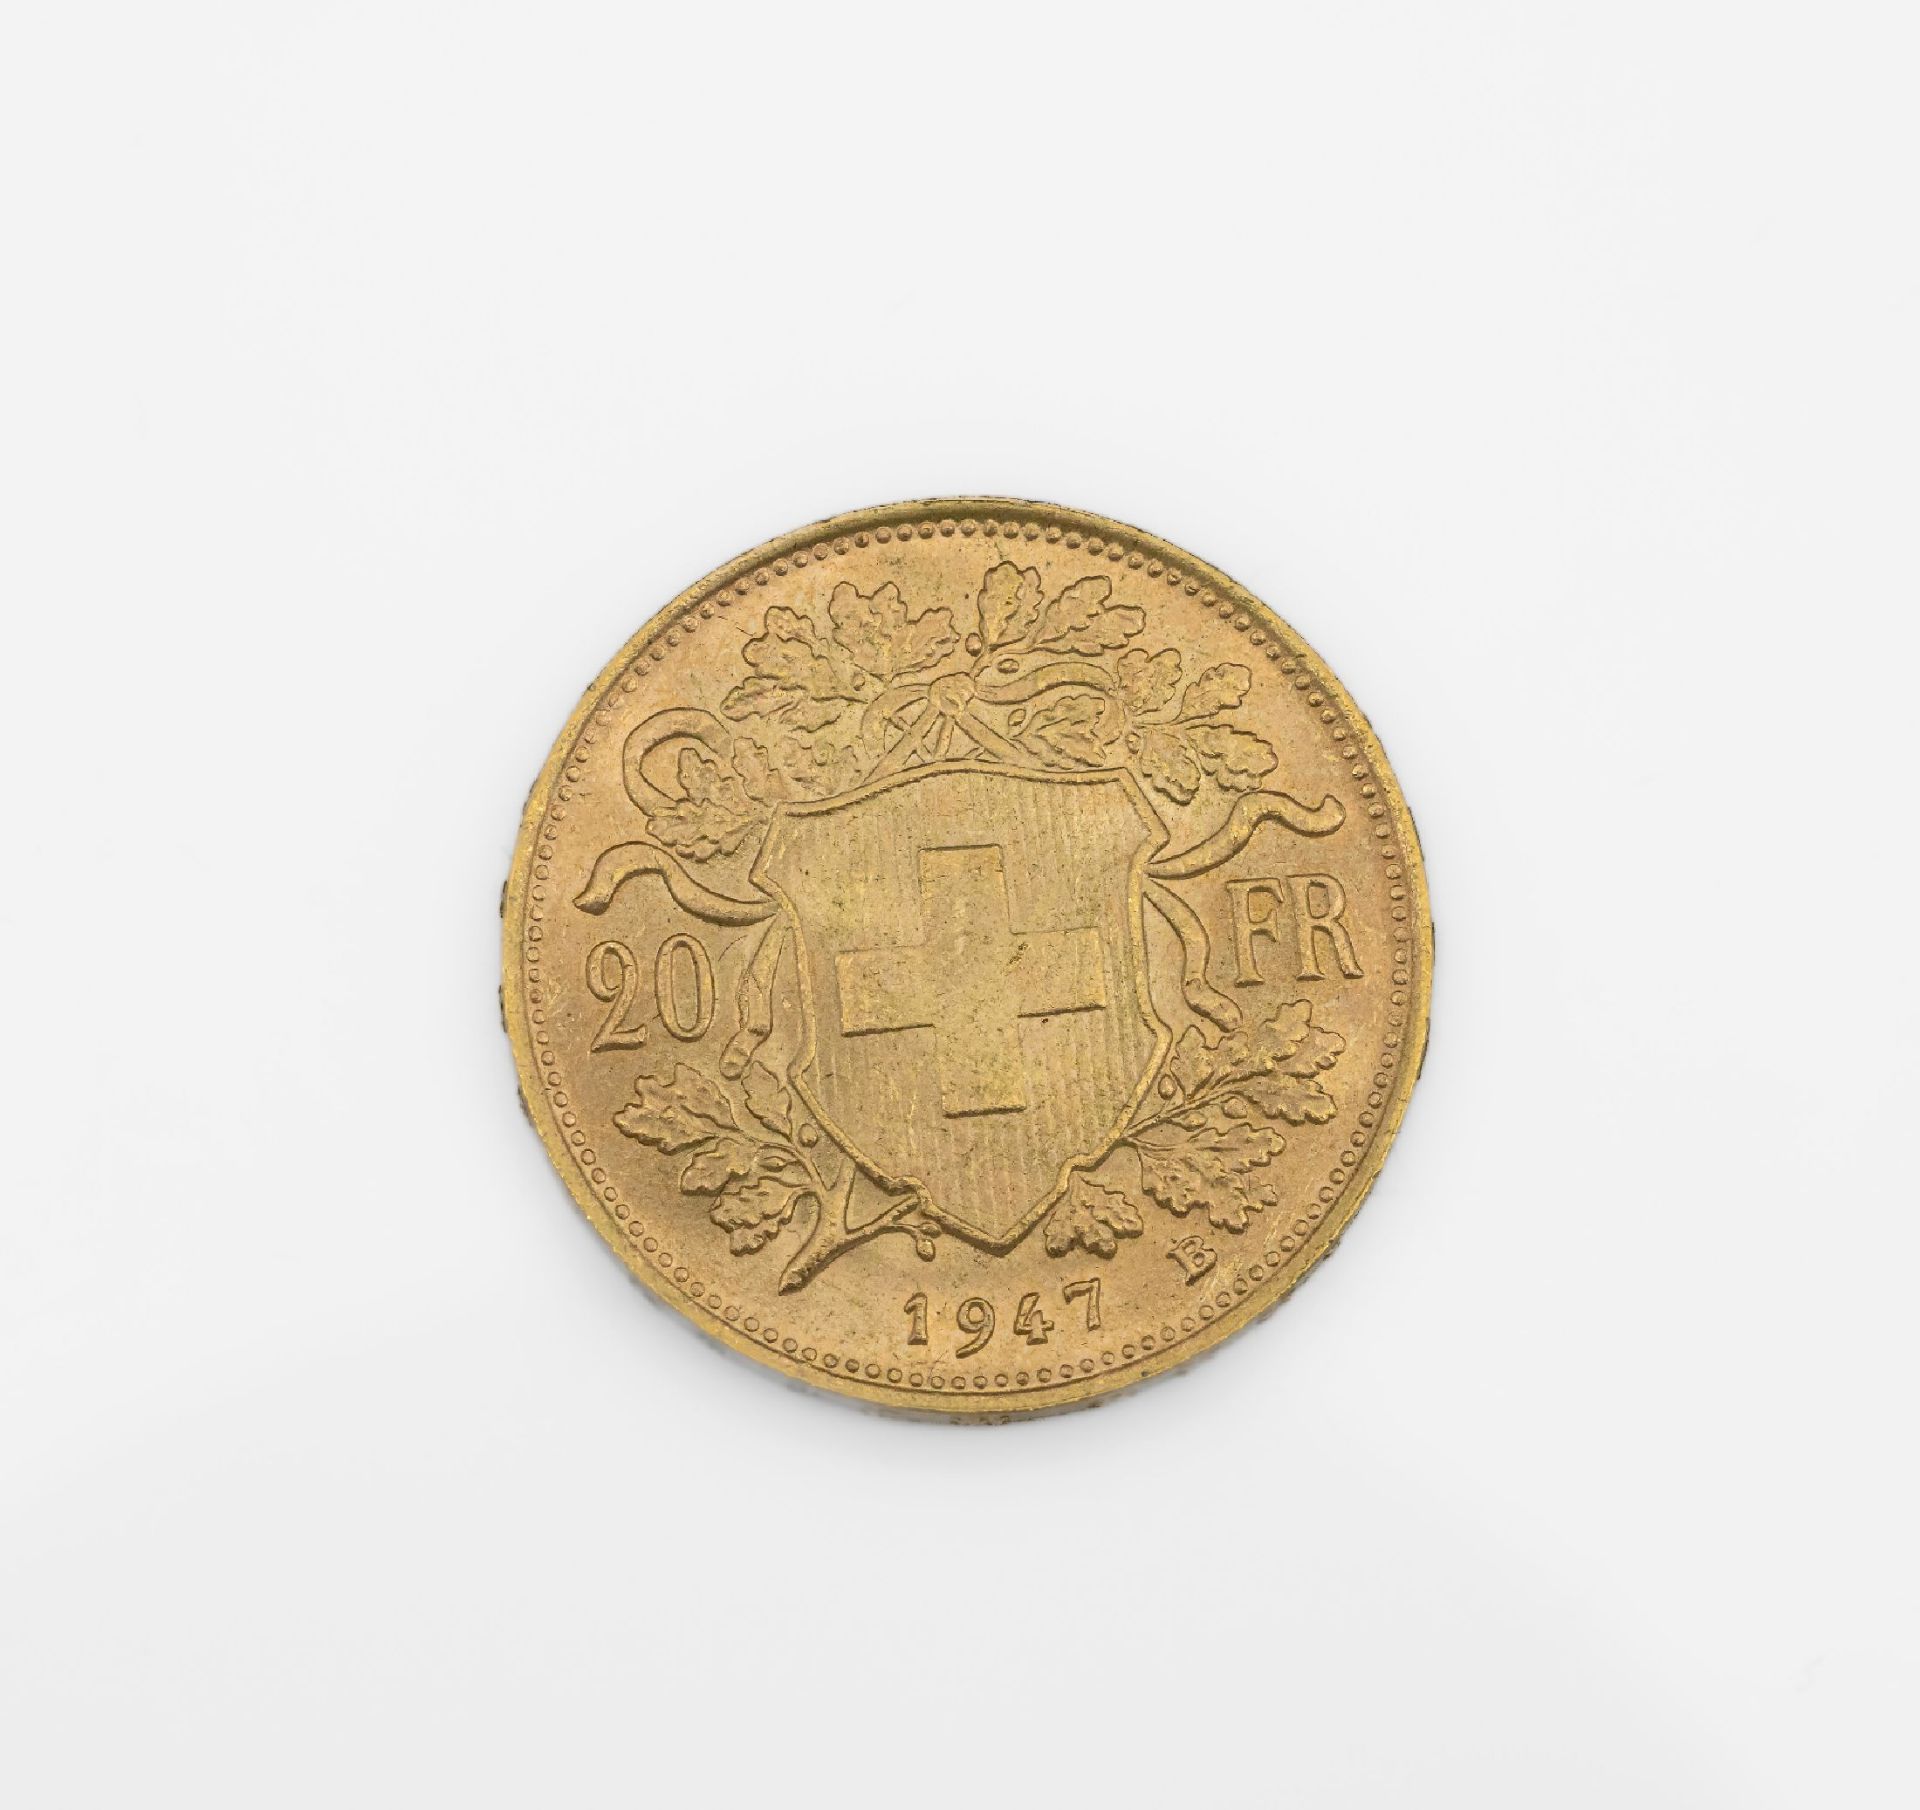 Goldmünze 20 Franken Schweiz 1947, sogn. Vreneli, - Image 2 of 2